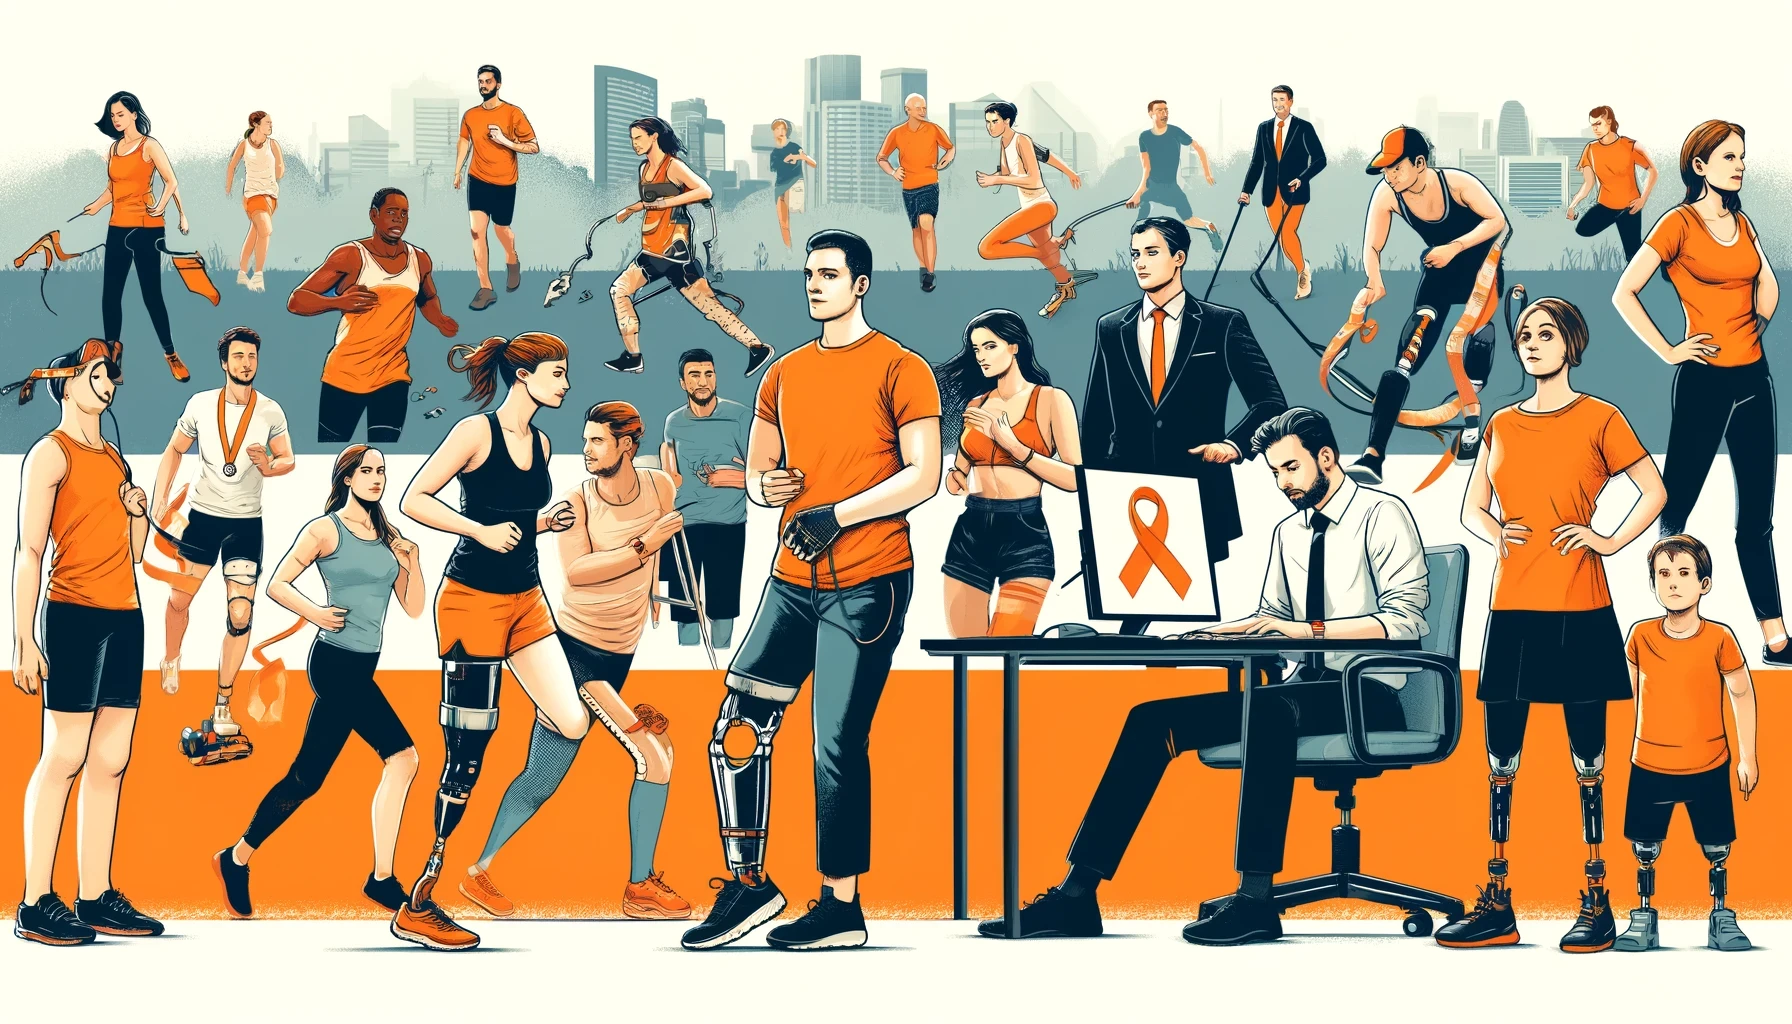 GPT Ilustracja przedstawia grupę różnorodnych osób, w tym mężczyzn i kobiet o różnym pochodzeniu etnicznym, z których niektórzy mają widoczne protezy kończyn. Postacie są ubrane w strój sportowy i biznesowy, angażując się w różne aktywności takie jak chodzenie, bieganie i praca w biurze. W tle widoczny jest miejski park. Dominujące kolory to odcienie pomarańczy, symbolizujące solidarność, a na projekcie wyraźnie widnieje pomarańczowa wstążka.